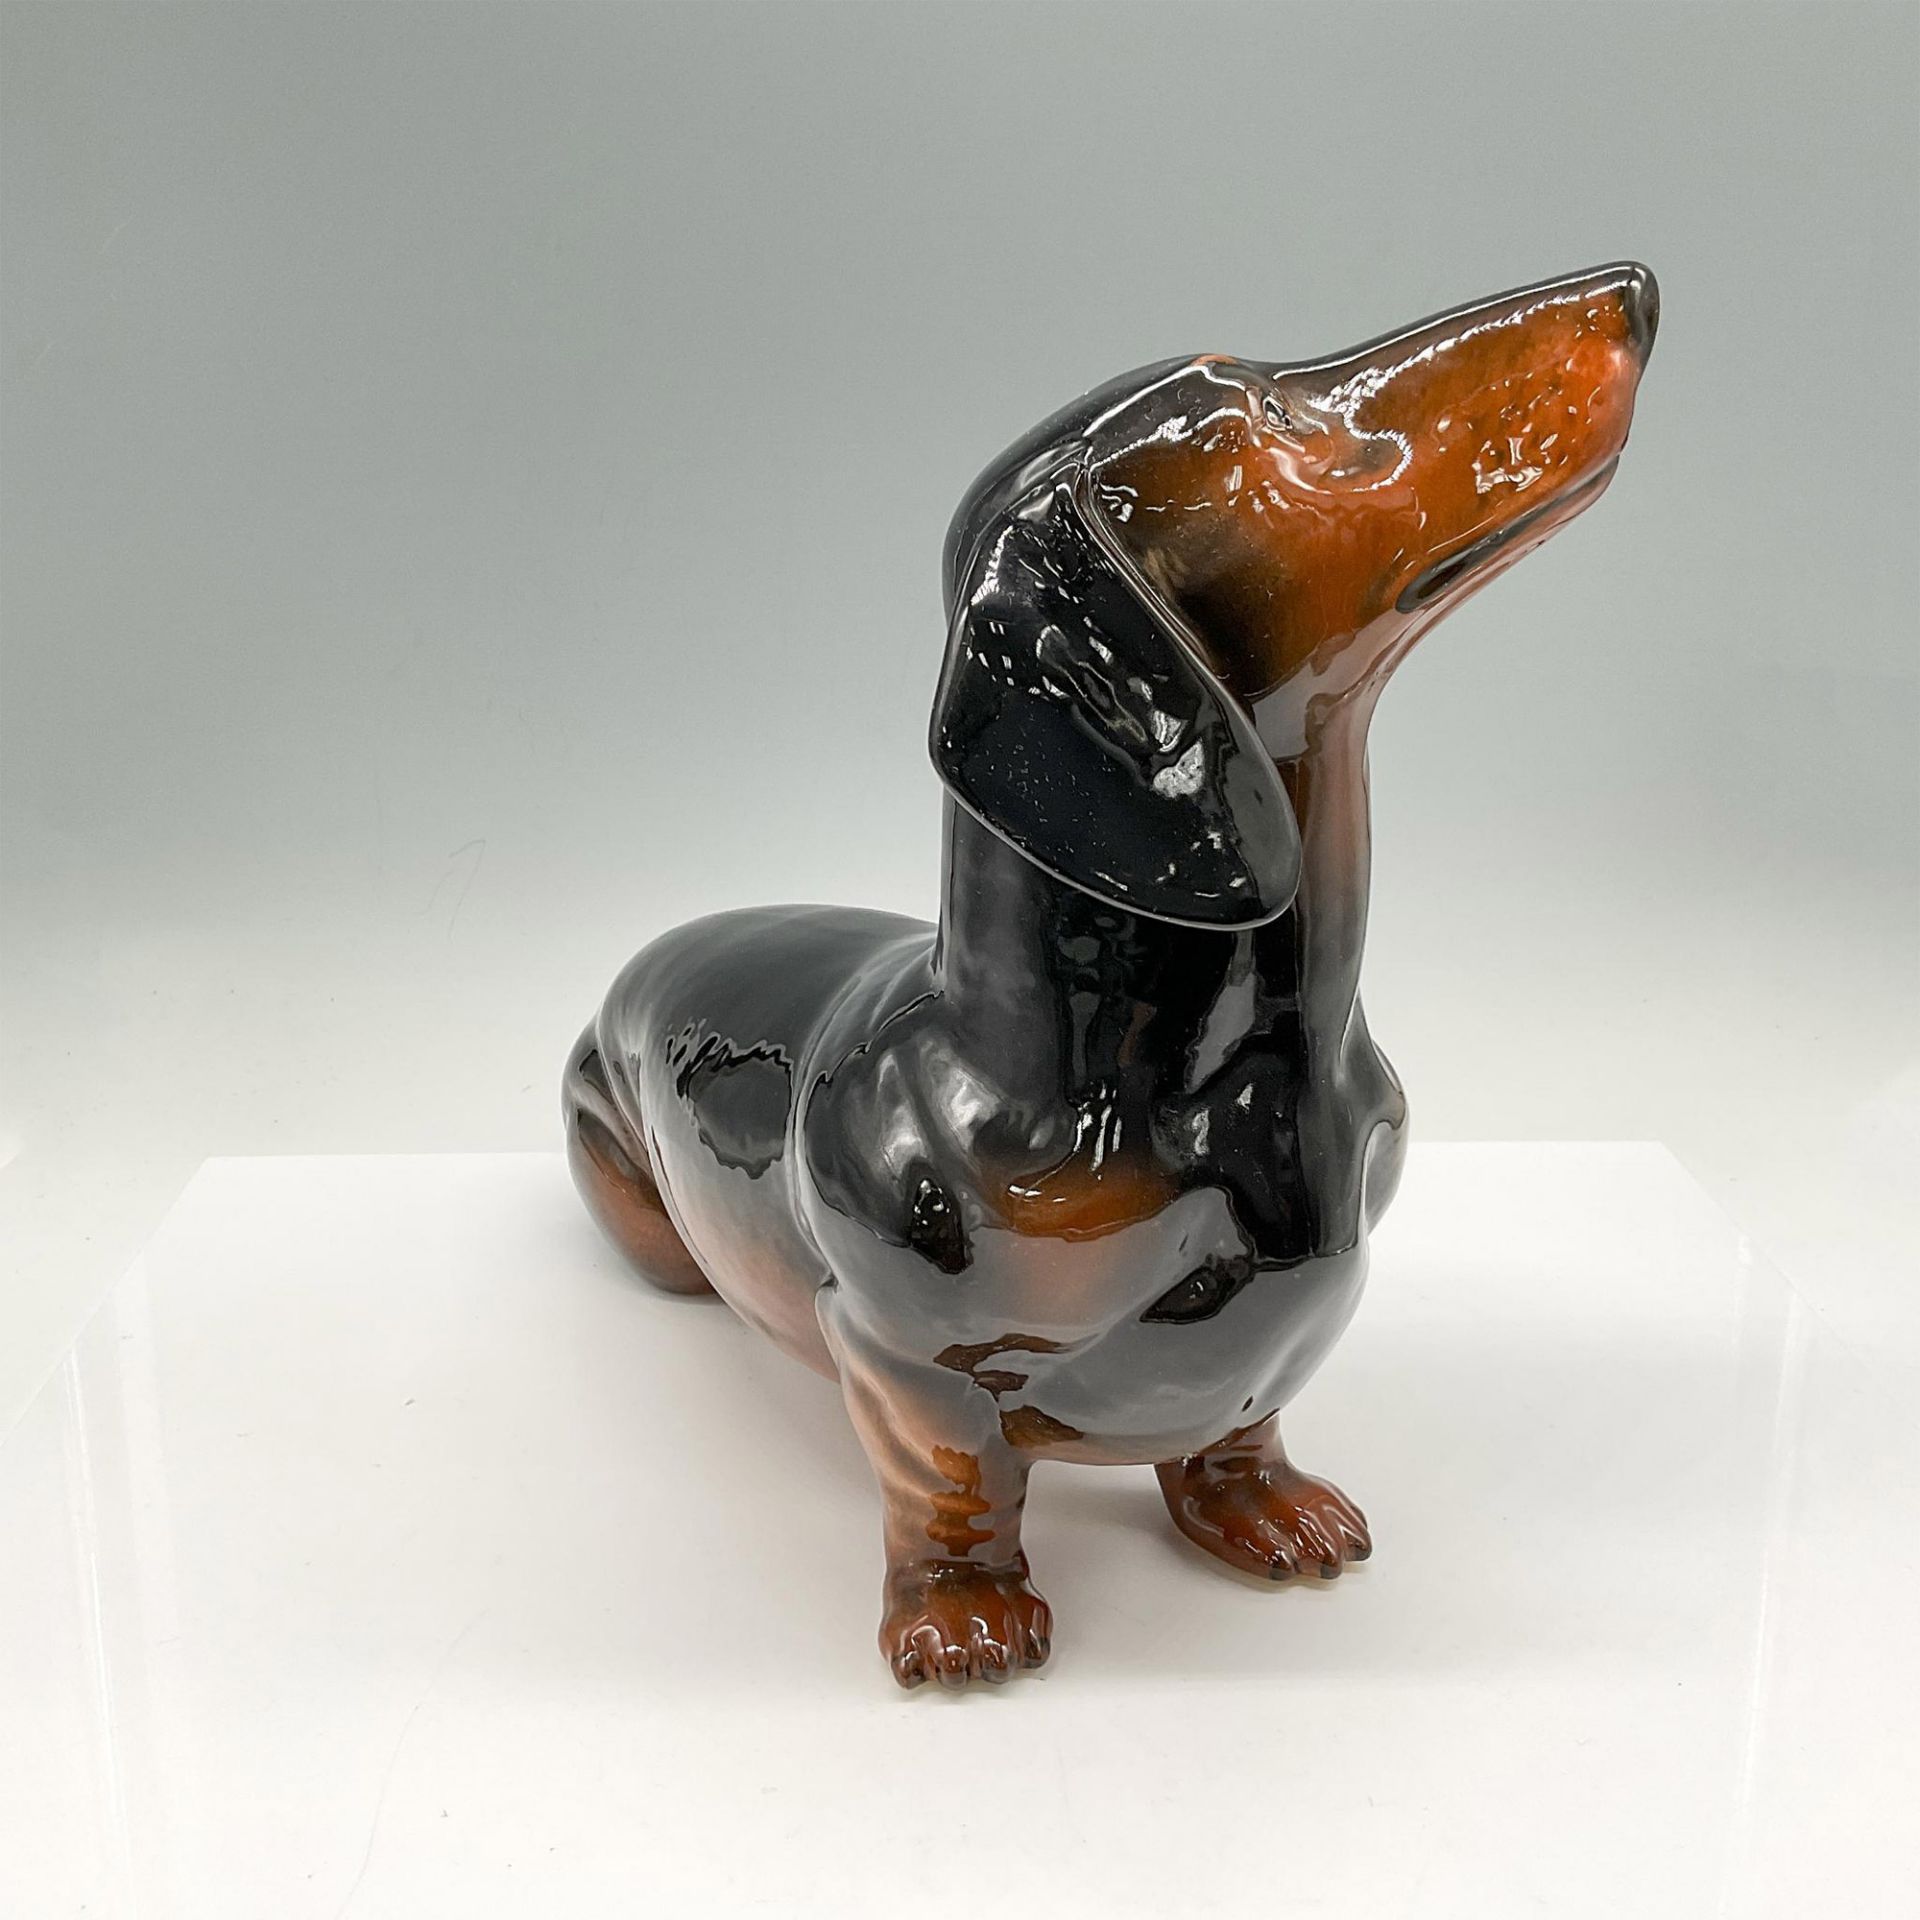 Beswick Porcelain Dog Figurine, Large Dachshund - Image 2 of 4